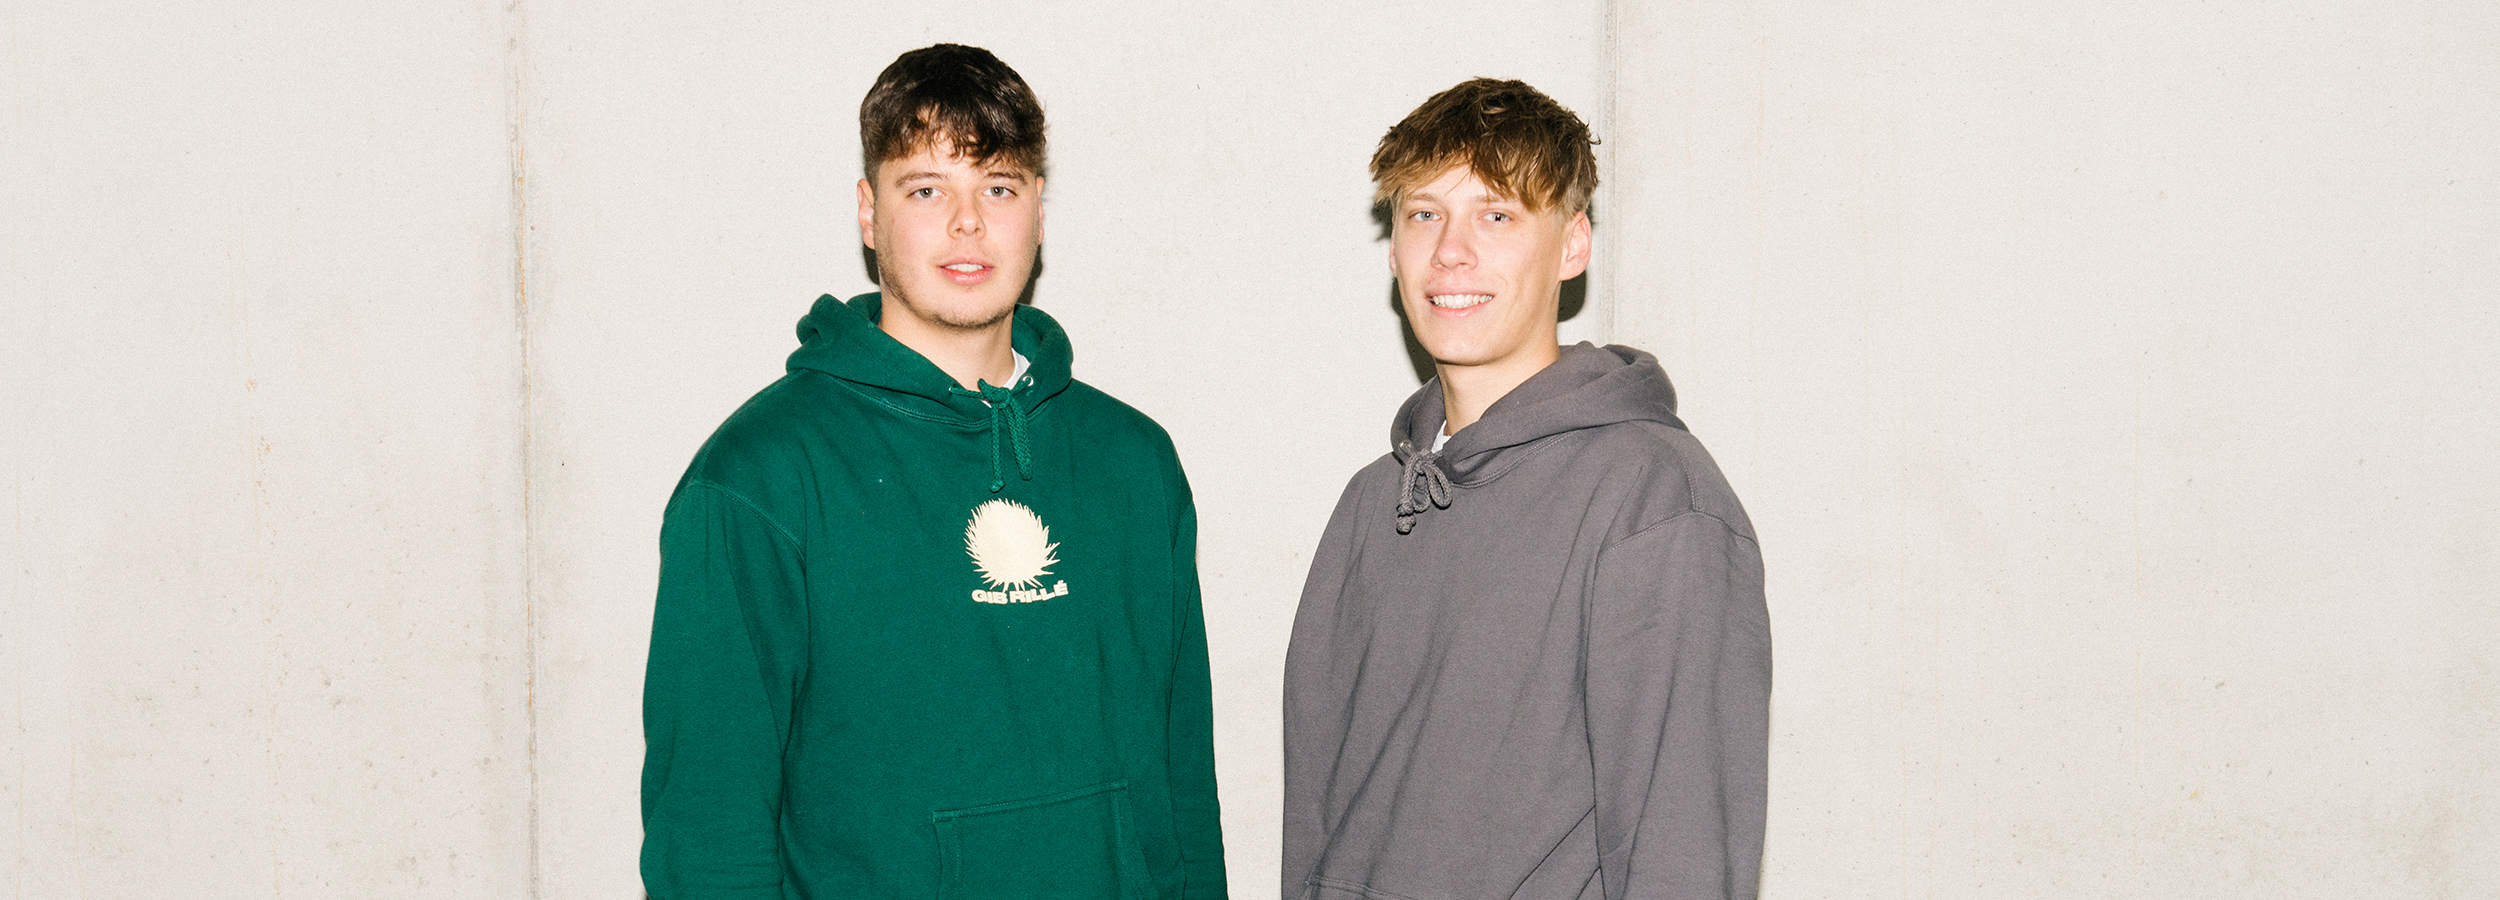 Gib Rillé Gründer Kilian Anton und Leo Leue gewinnen den POP-UP Store in der Lüneburger Innenstadt Start-Up Fair Fashion